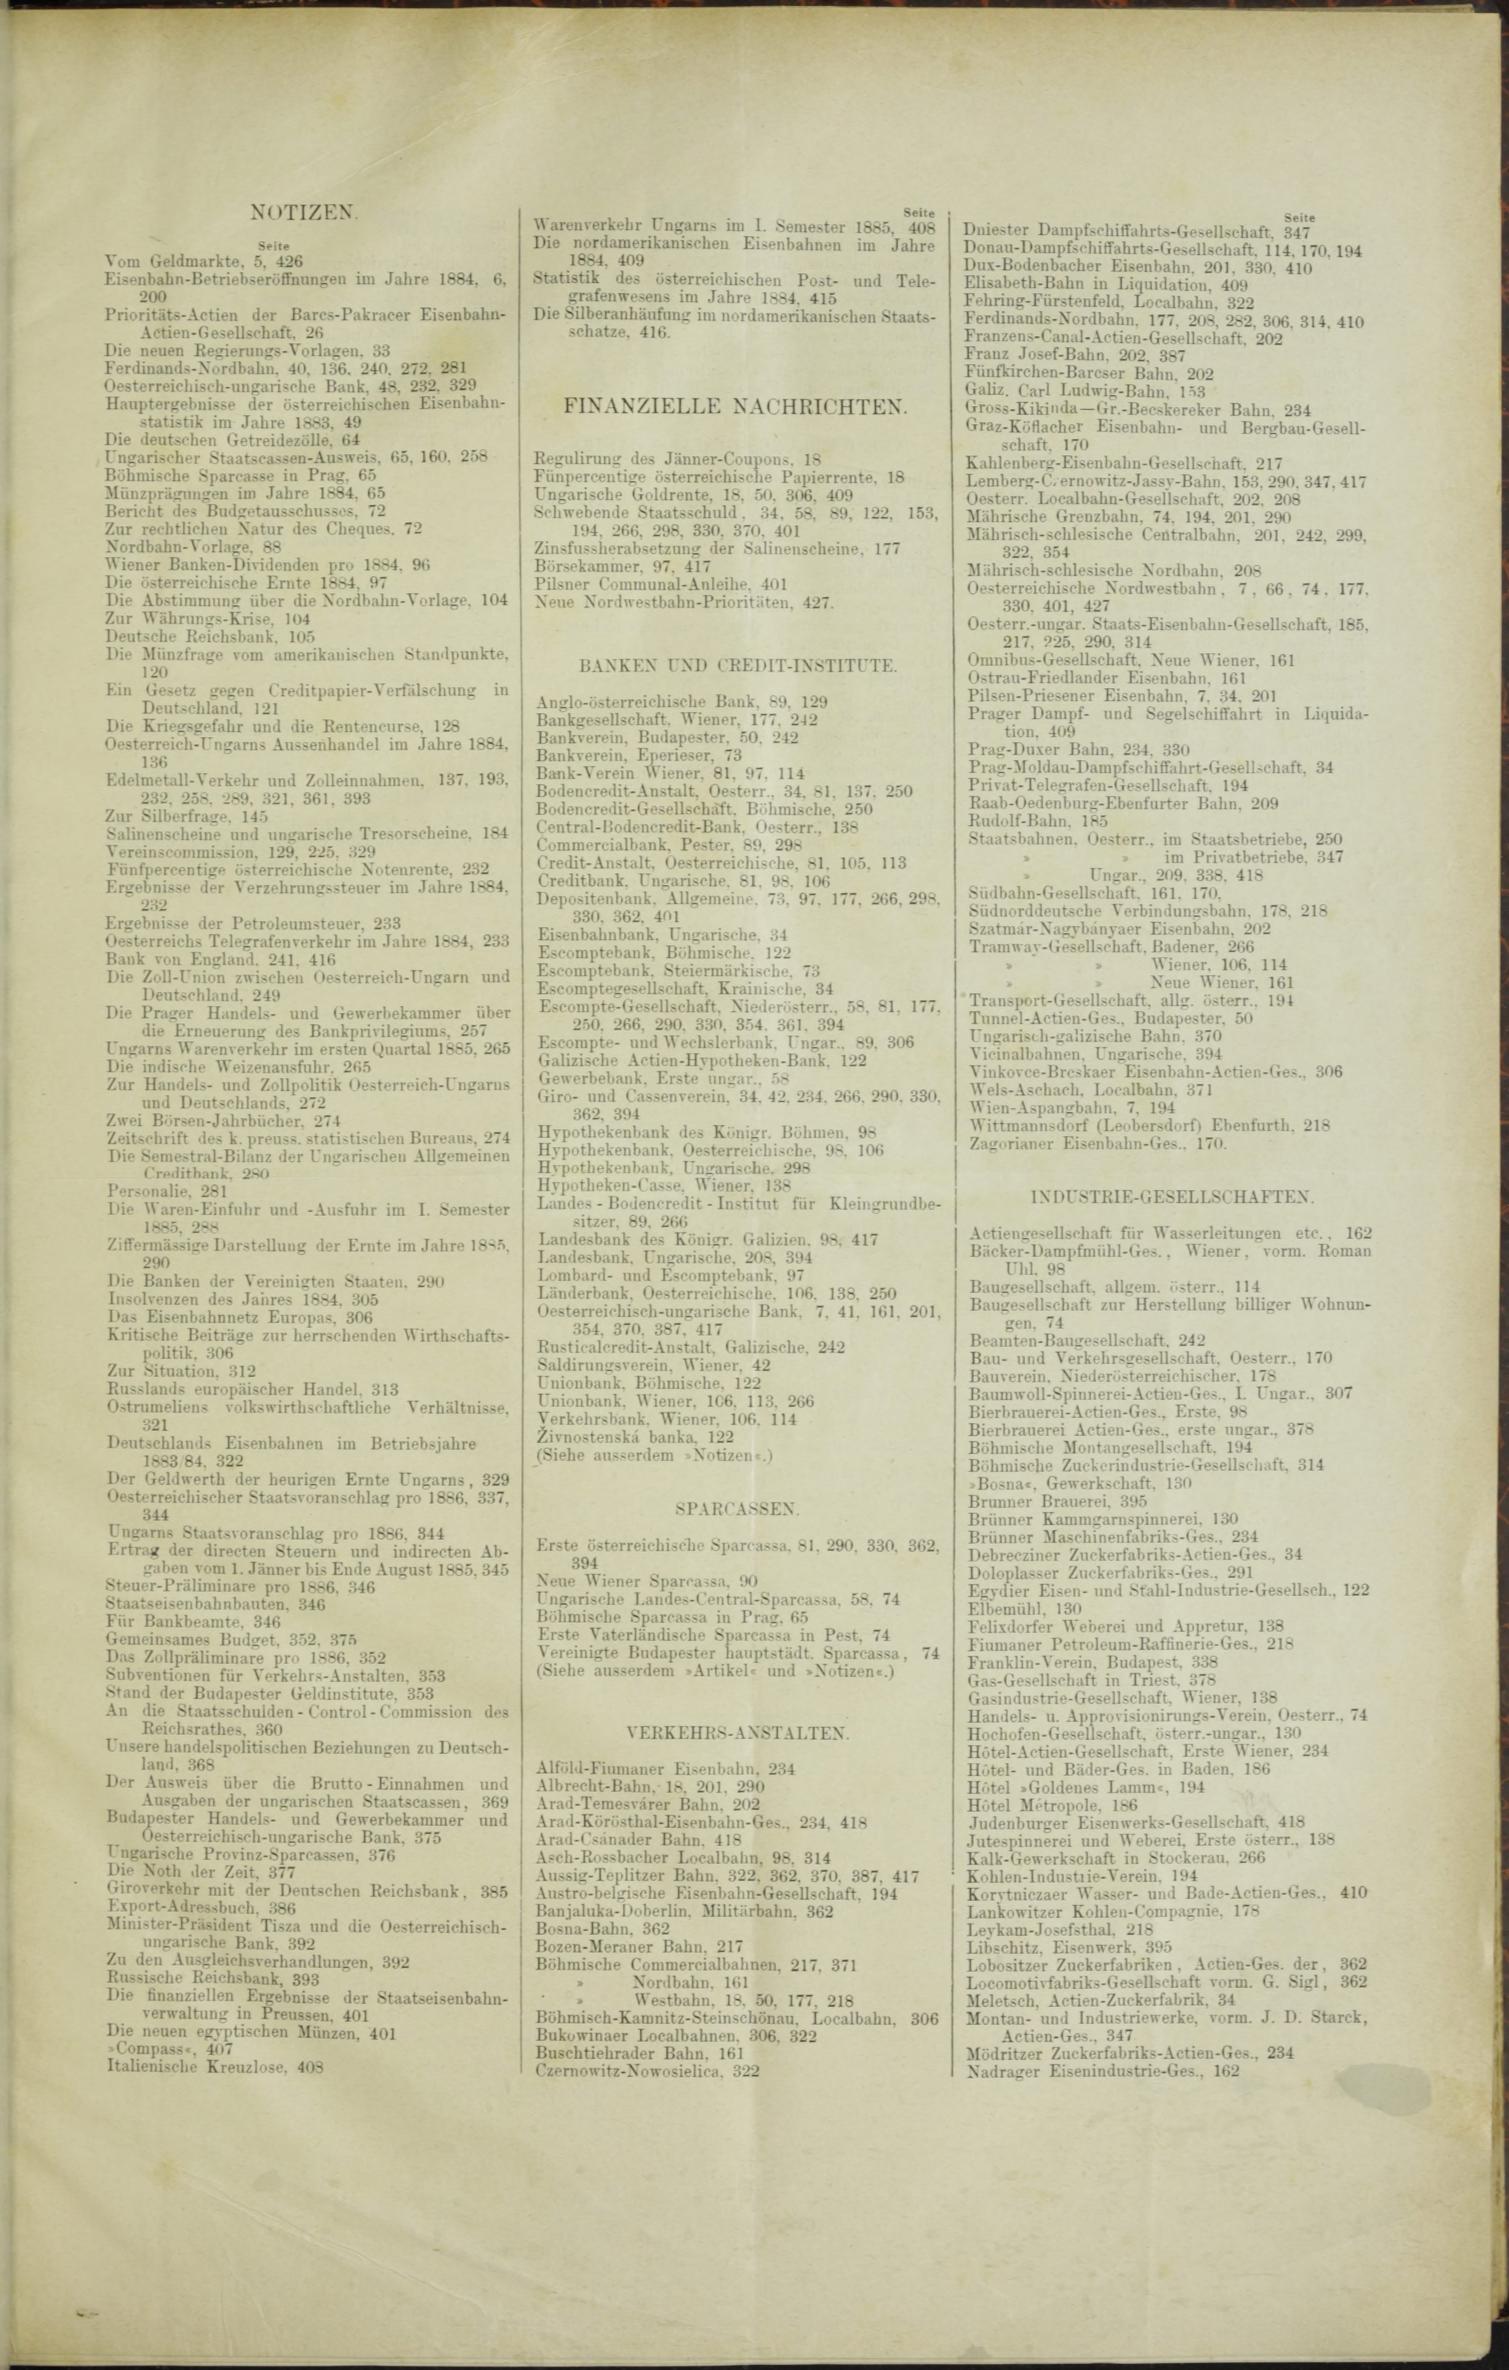 Der Tresor 05.03.1885 - Seite 11